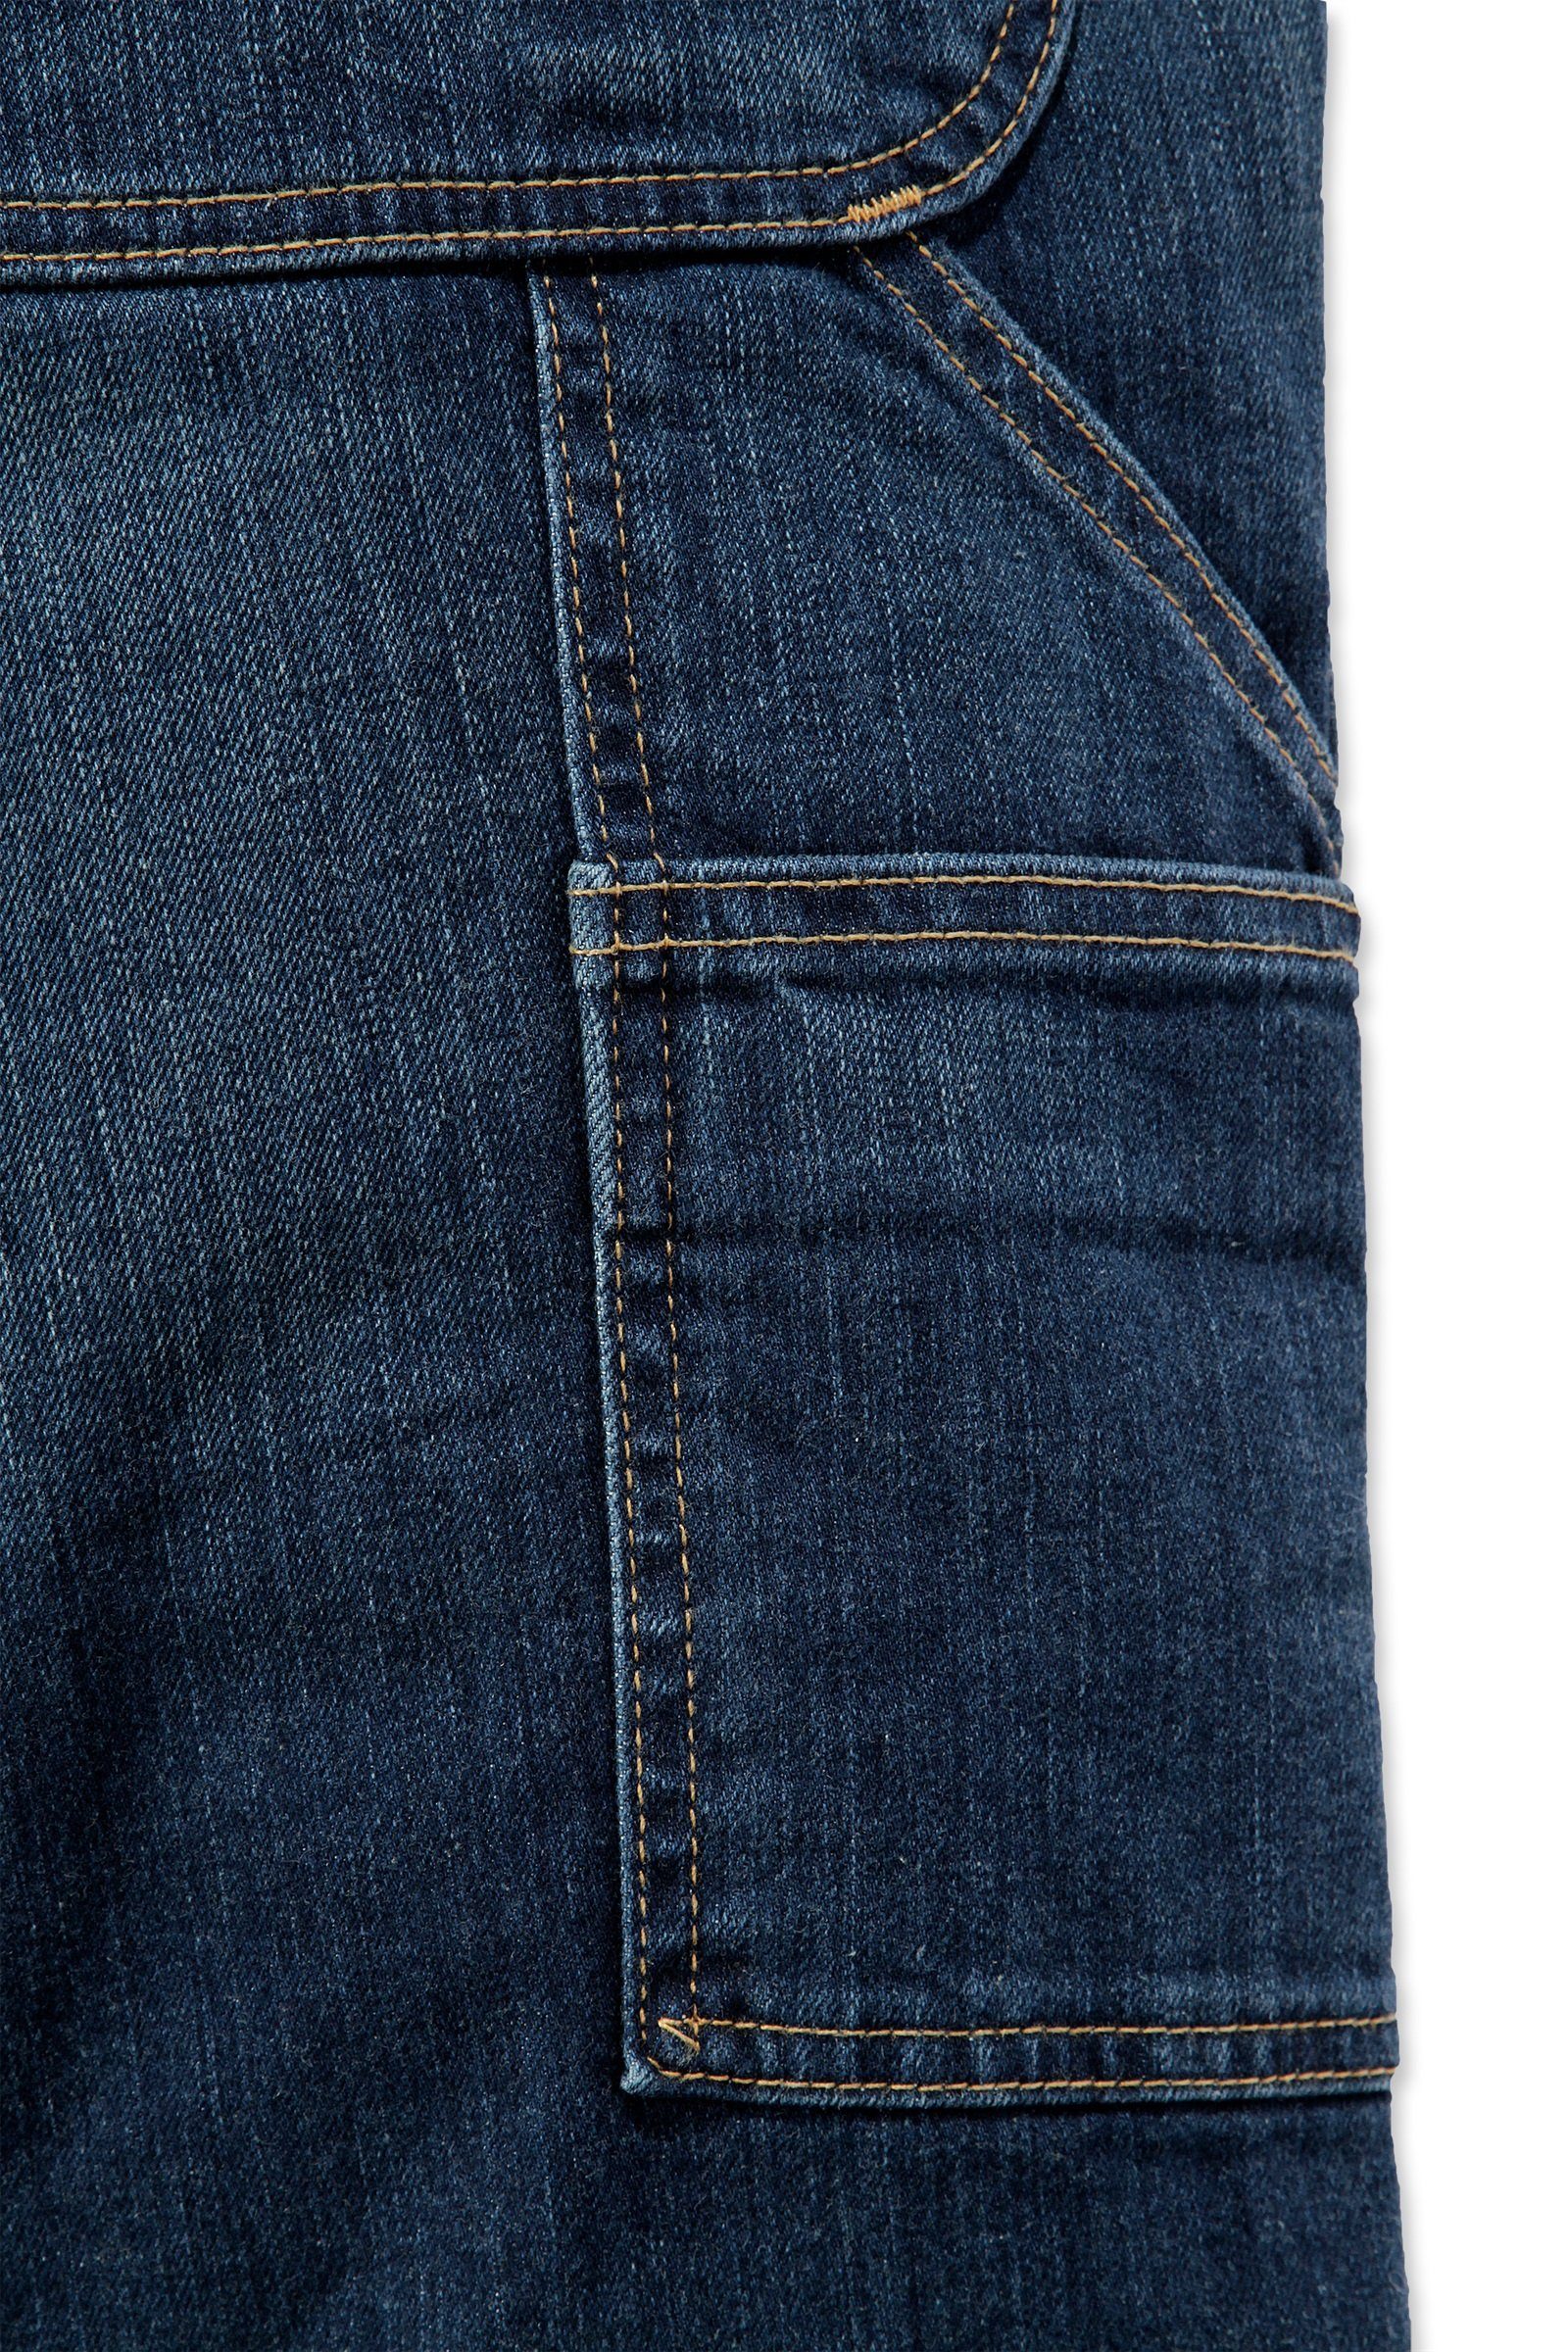 Rugged Carhartt Carhartt Herren Regular-fit-Jeans Dungaree Jeans Relaxed Flex